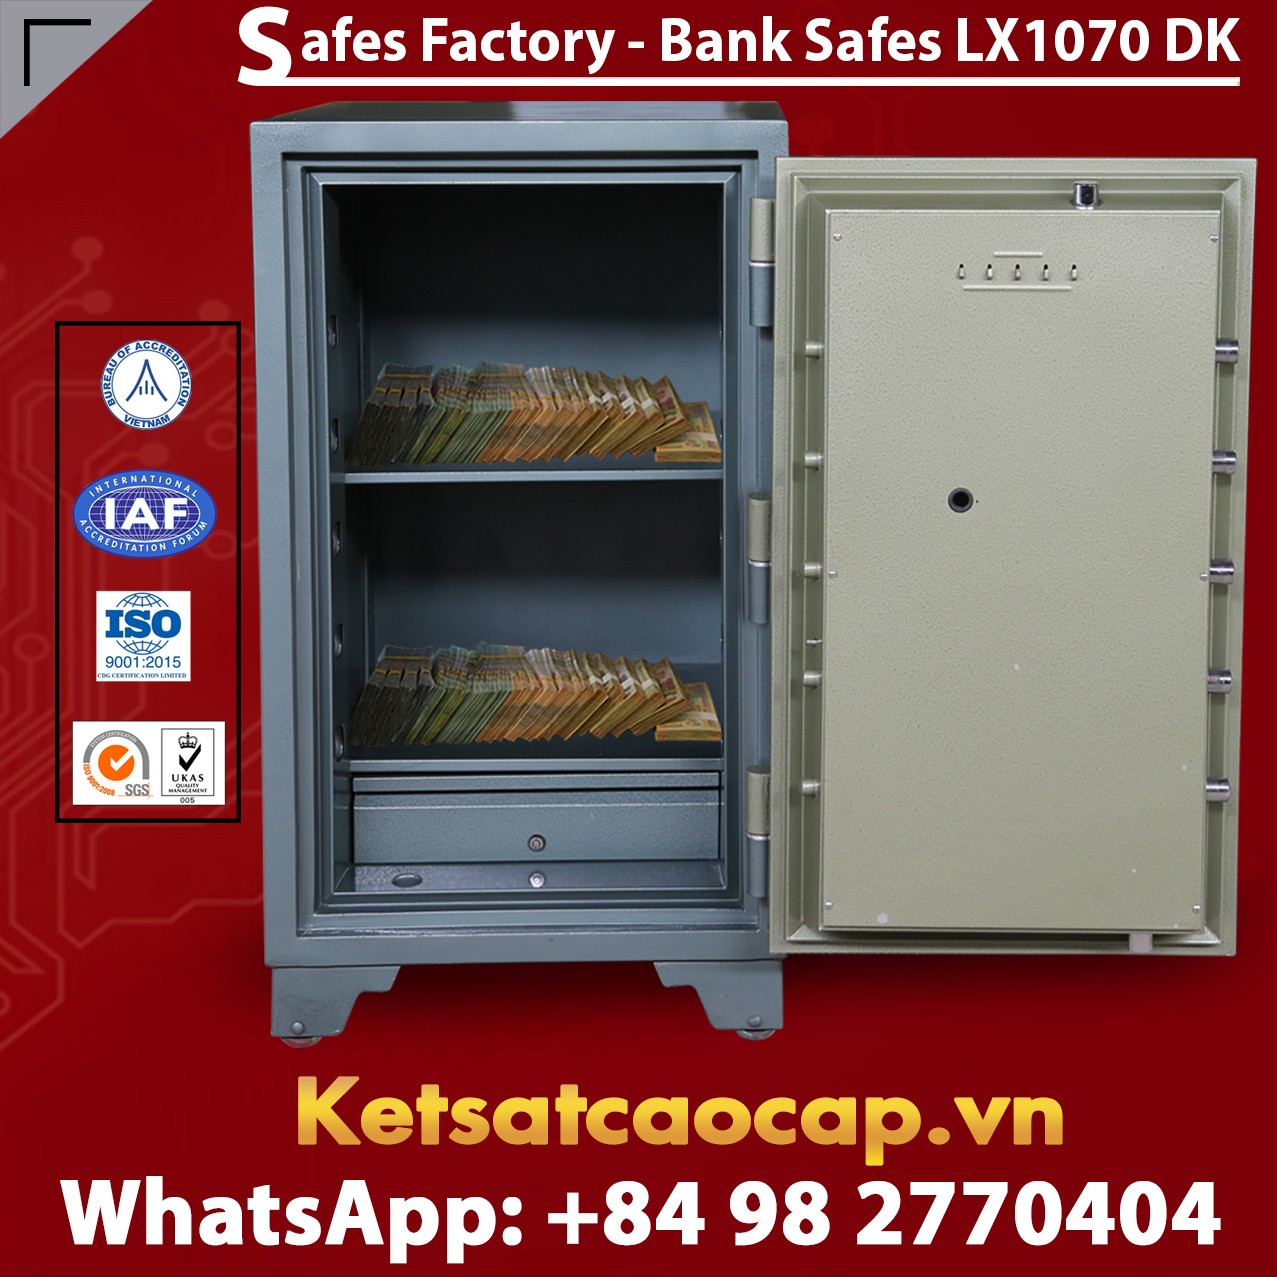 Bank Safes LX1070 DK Top 1 Quality Bank Safe Luxury Design From BEMC